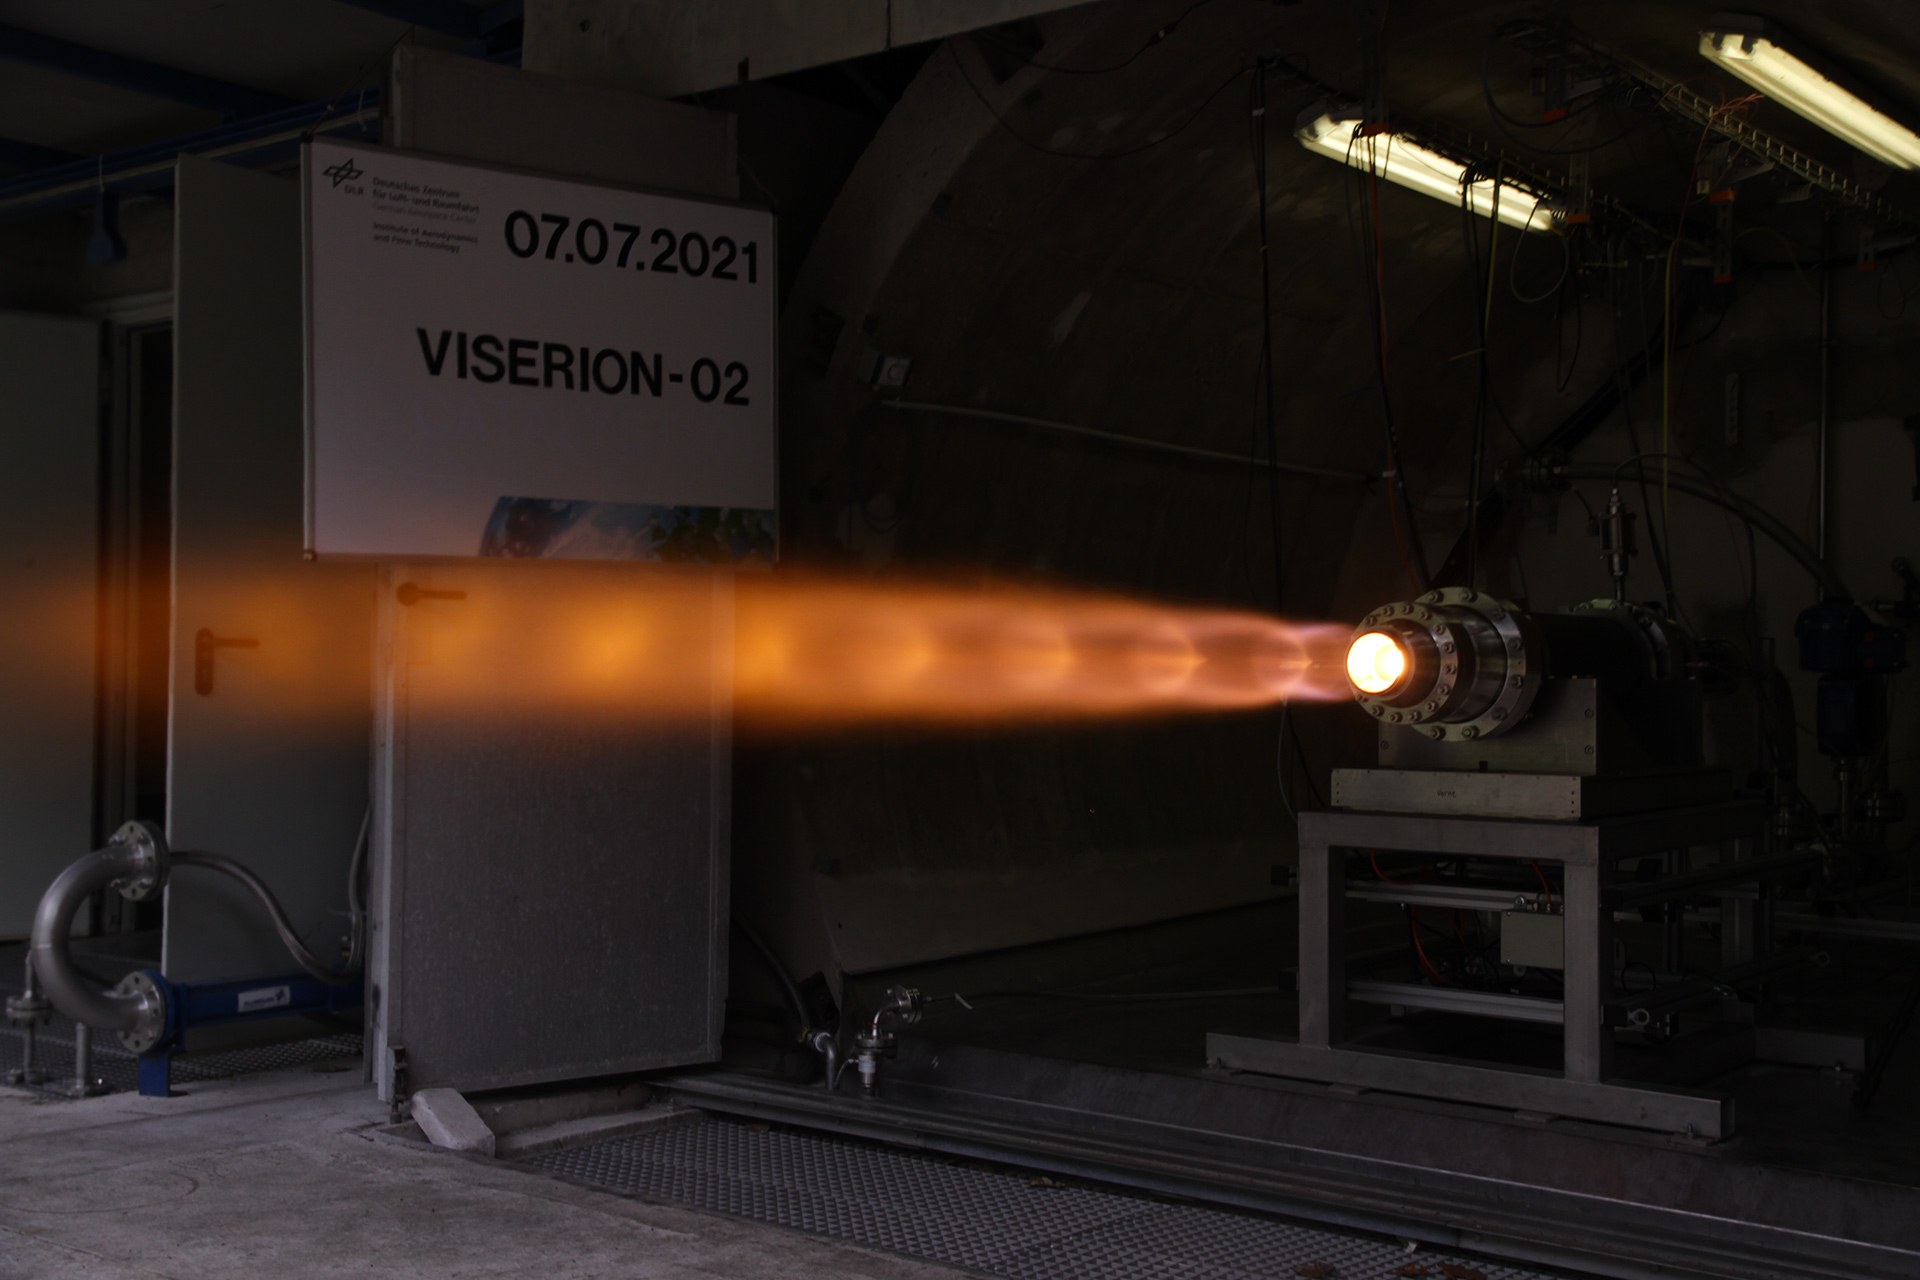 VISERION hybrid rocket engine test in Trauen